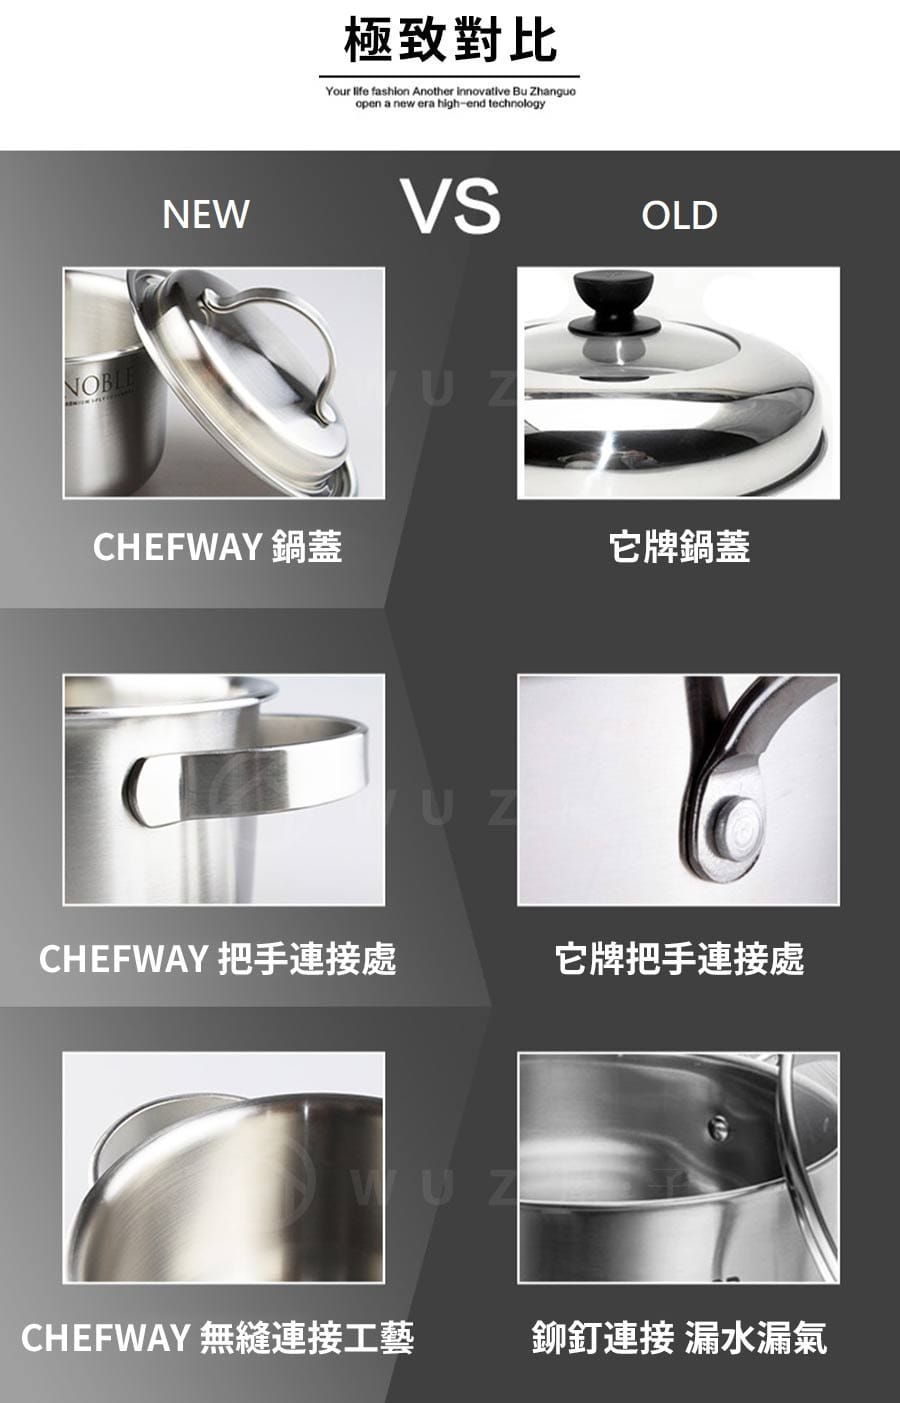 韓國 CHEFWAY 諾貝系列不銹鋼深湯鍋28cm